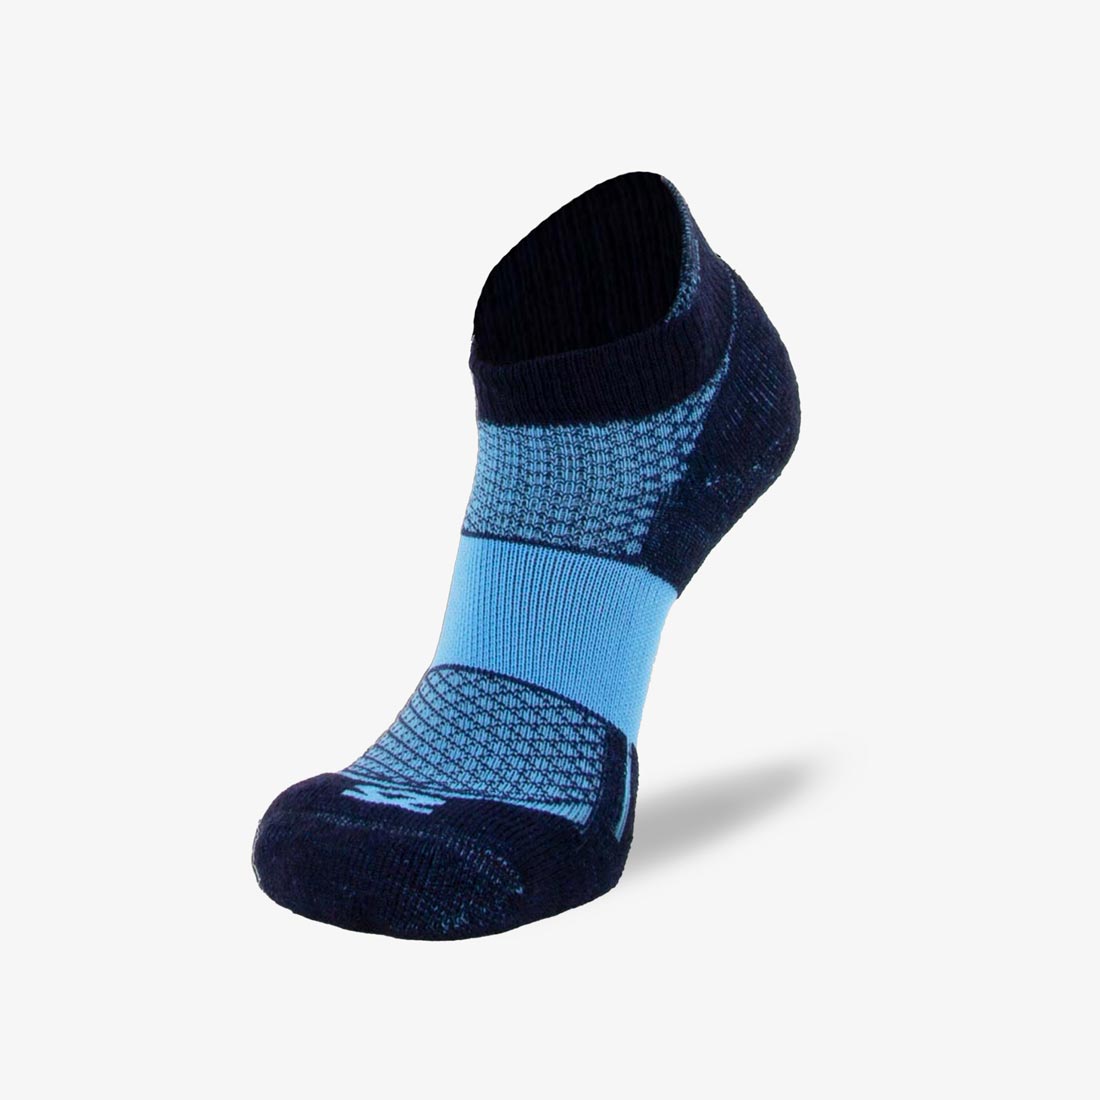 Wool 2.0 Running socks